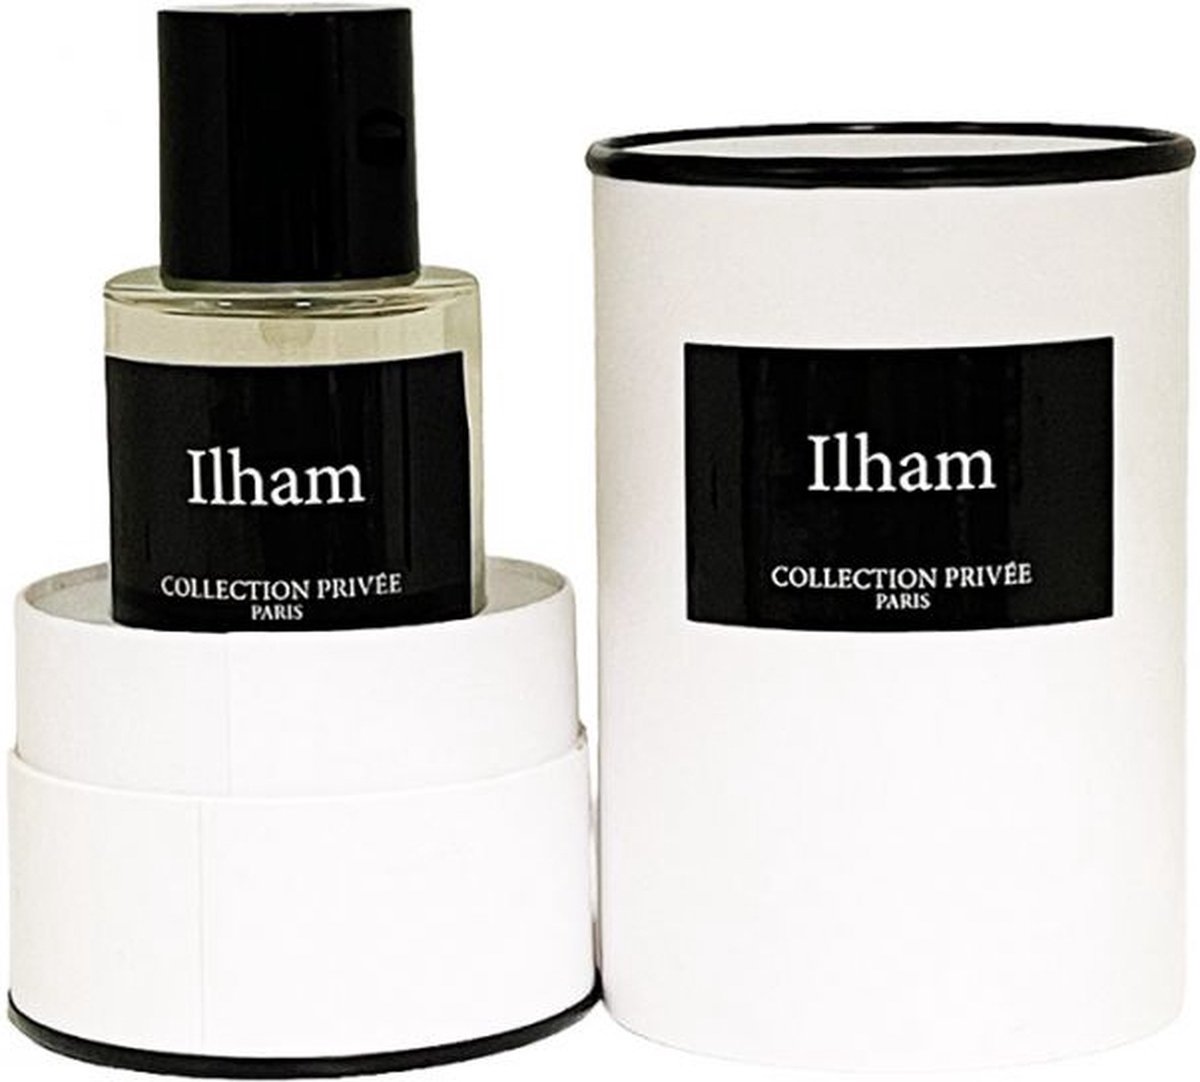 Collection Privee Paris Ilham 50 ml Eau de Parfum - Unisex